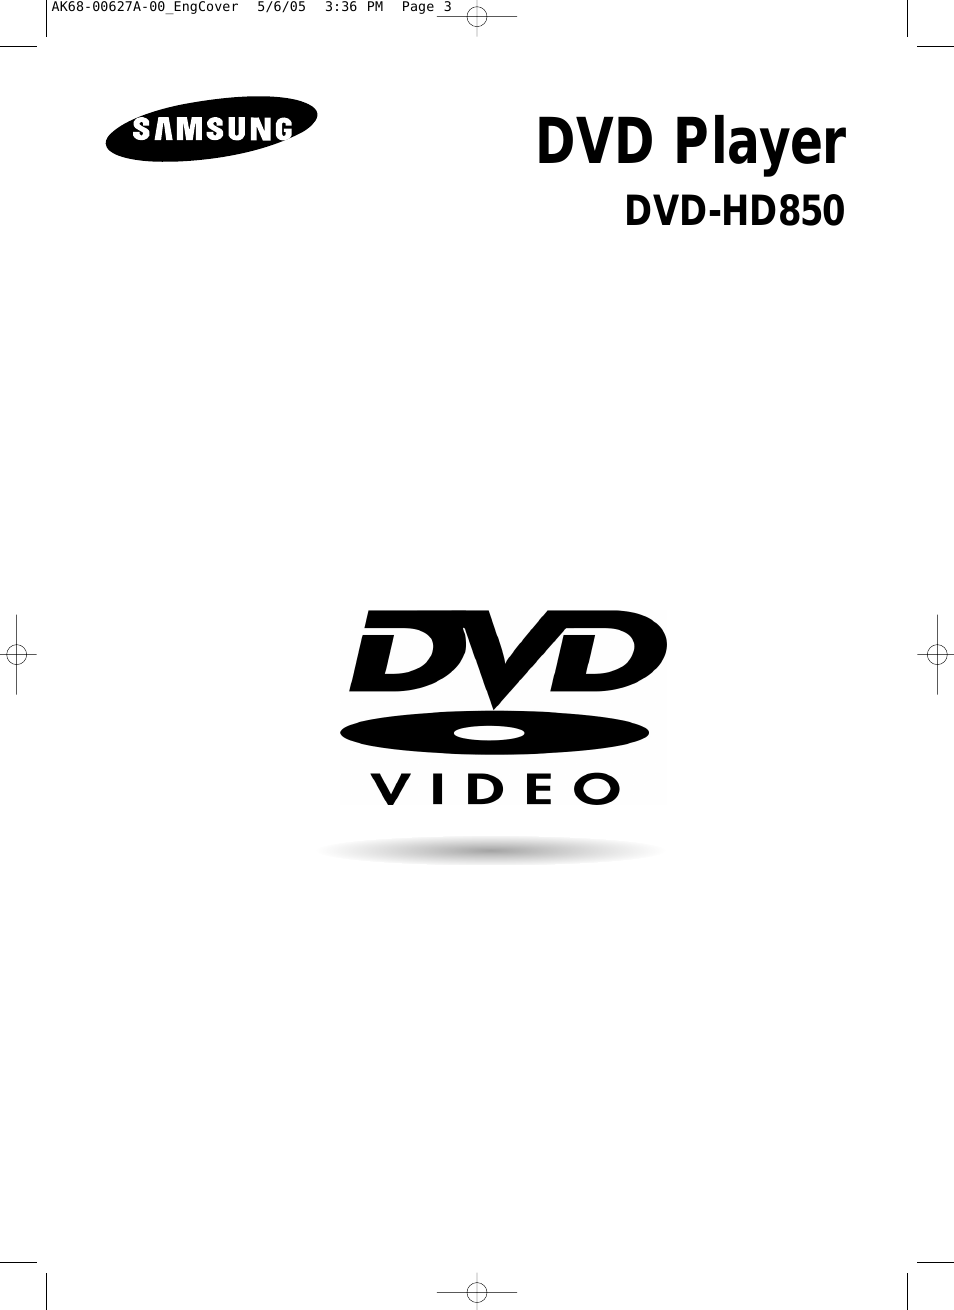 DVD-HD850